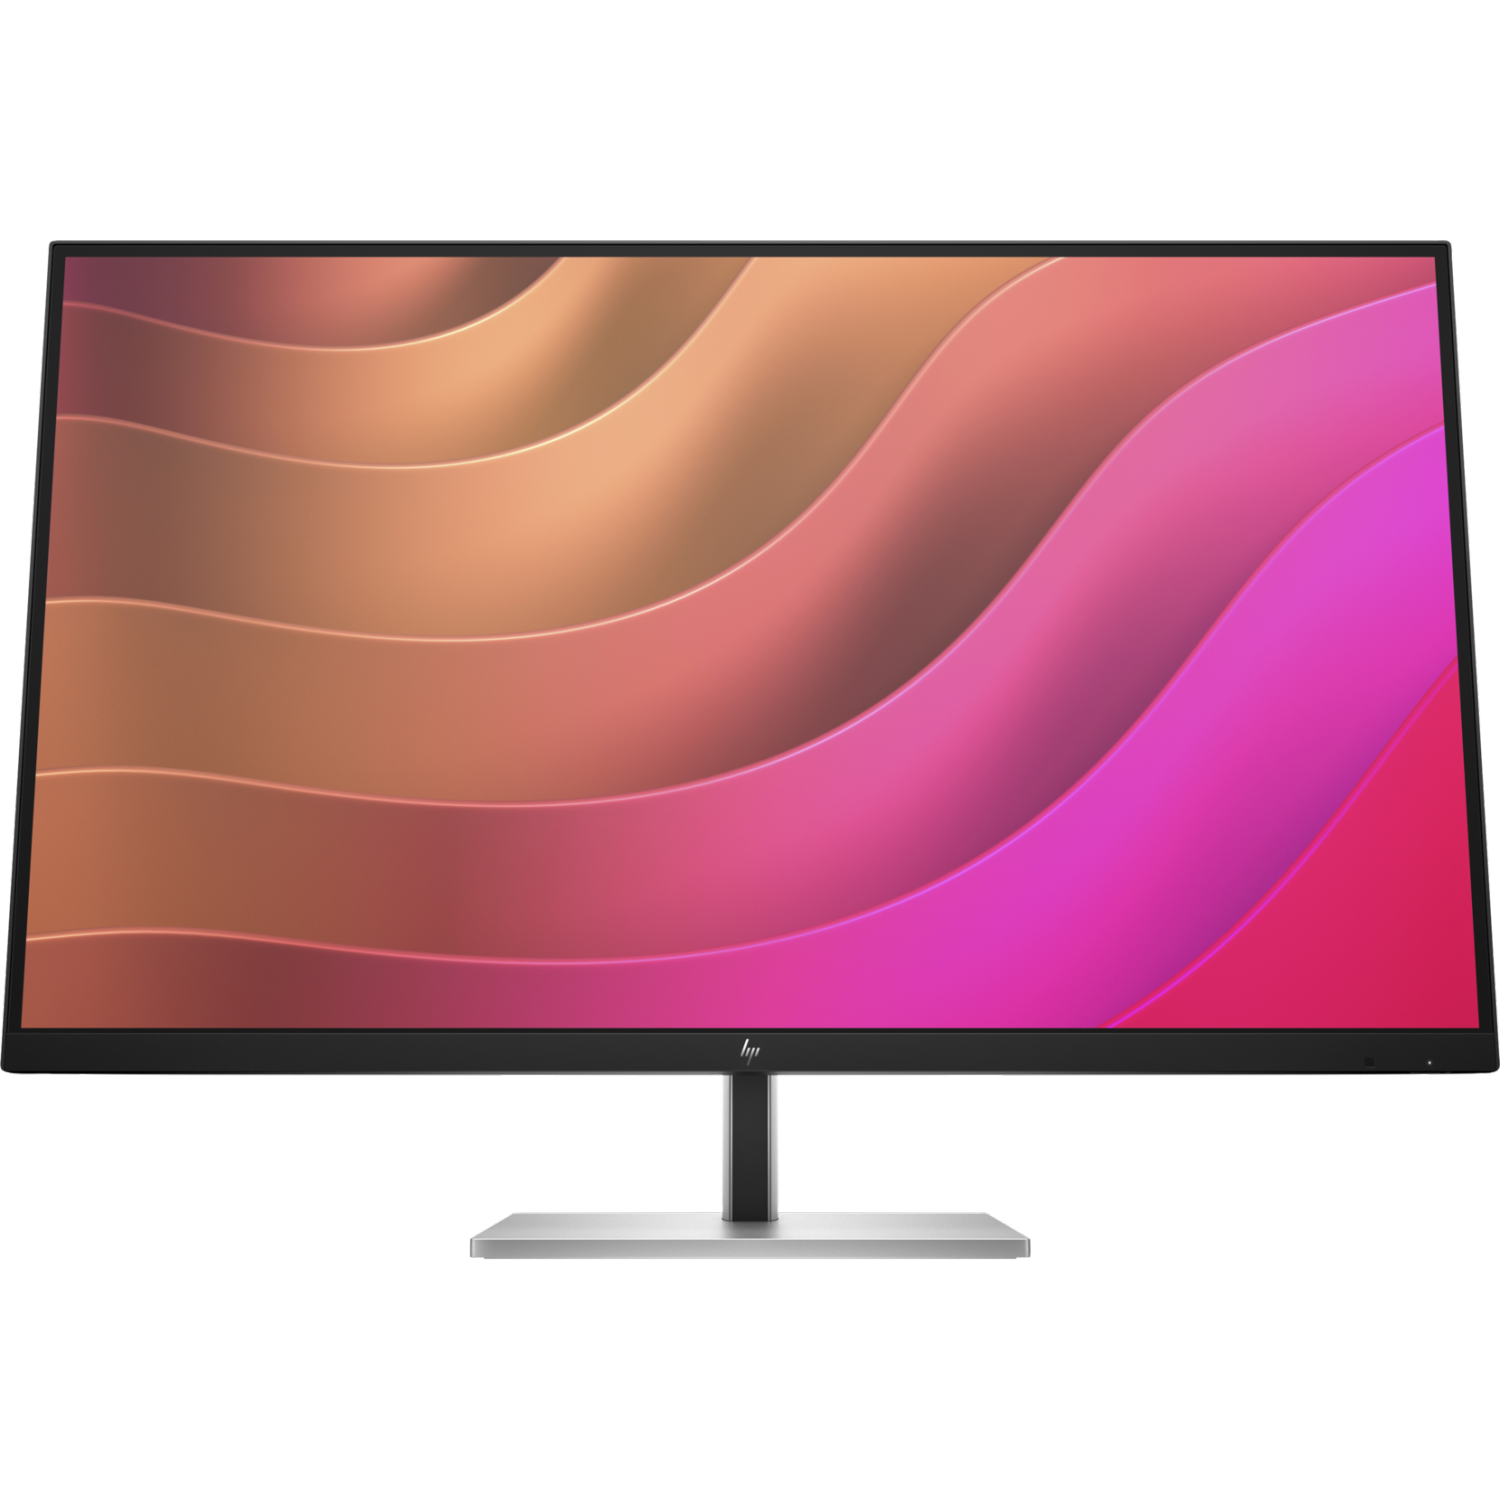 HP 31.5" 4K UHD 60Hz 5ms GTG IPS LCD Monitor (6N4D6AA#ABA) - Black, Silver